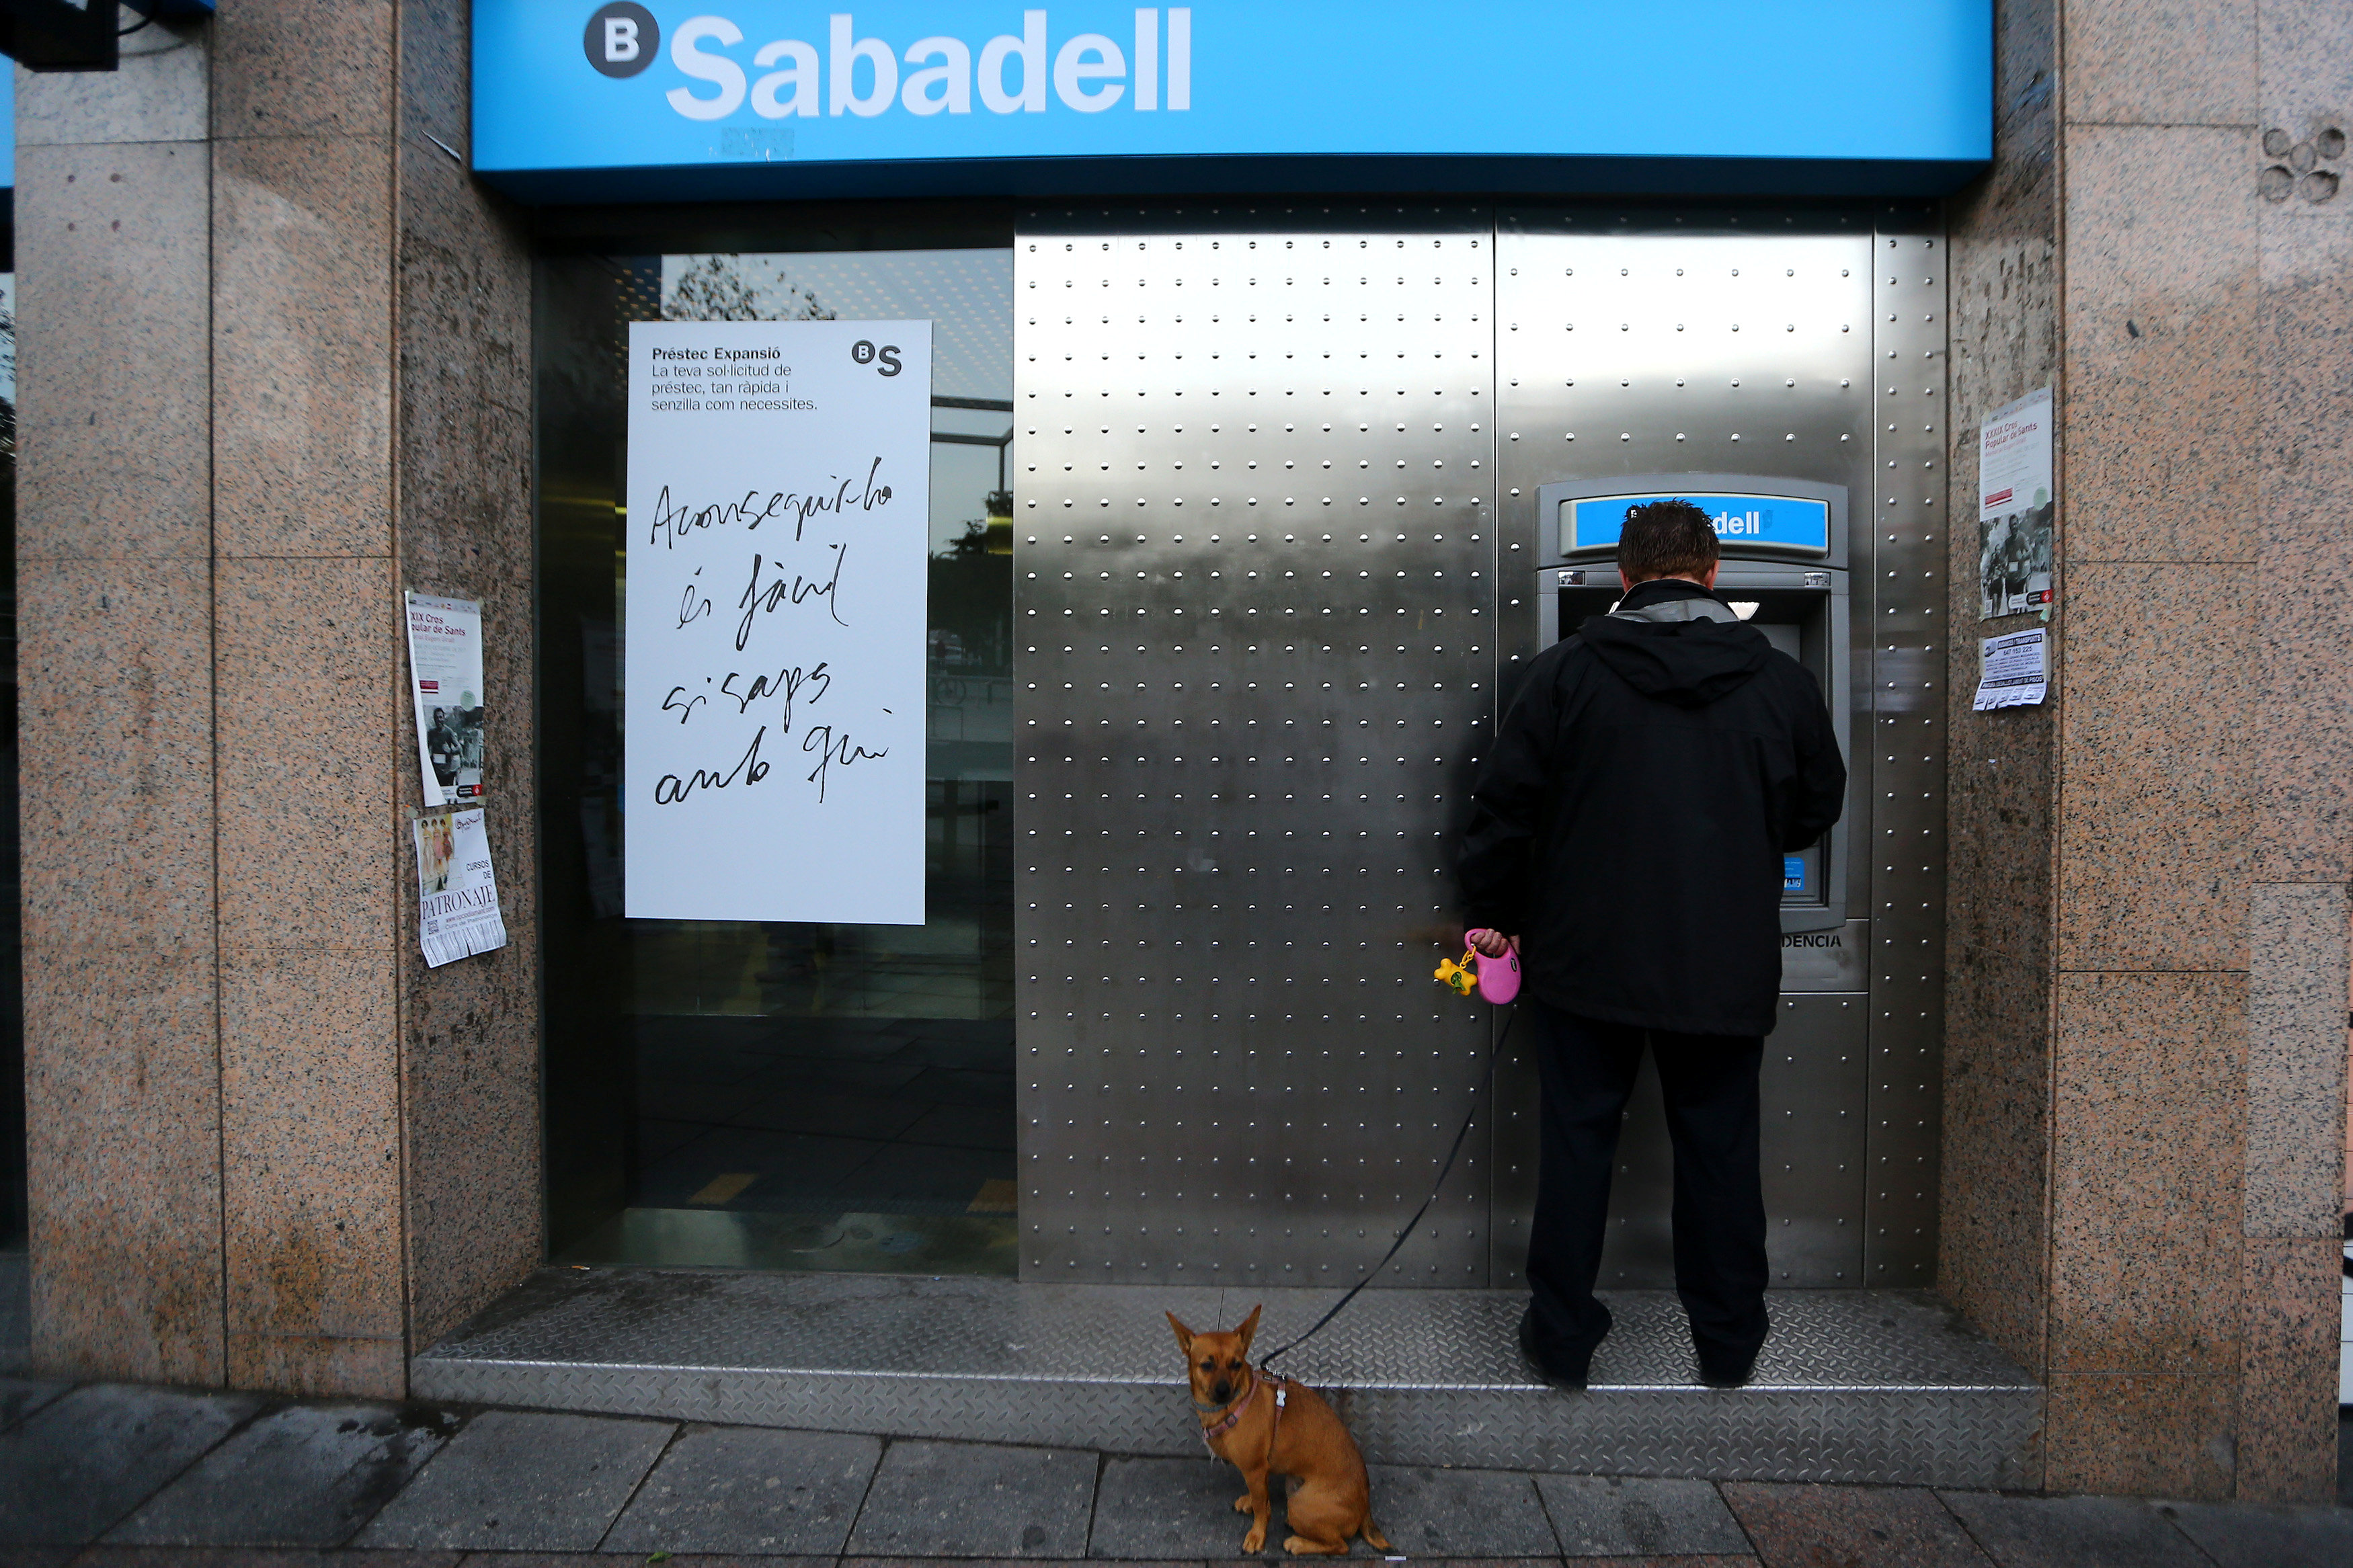 رجل يسحب أموالًا من البنك ضمن حملة فى كتالونيا اعتراضا على عقوبات اسبانيا